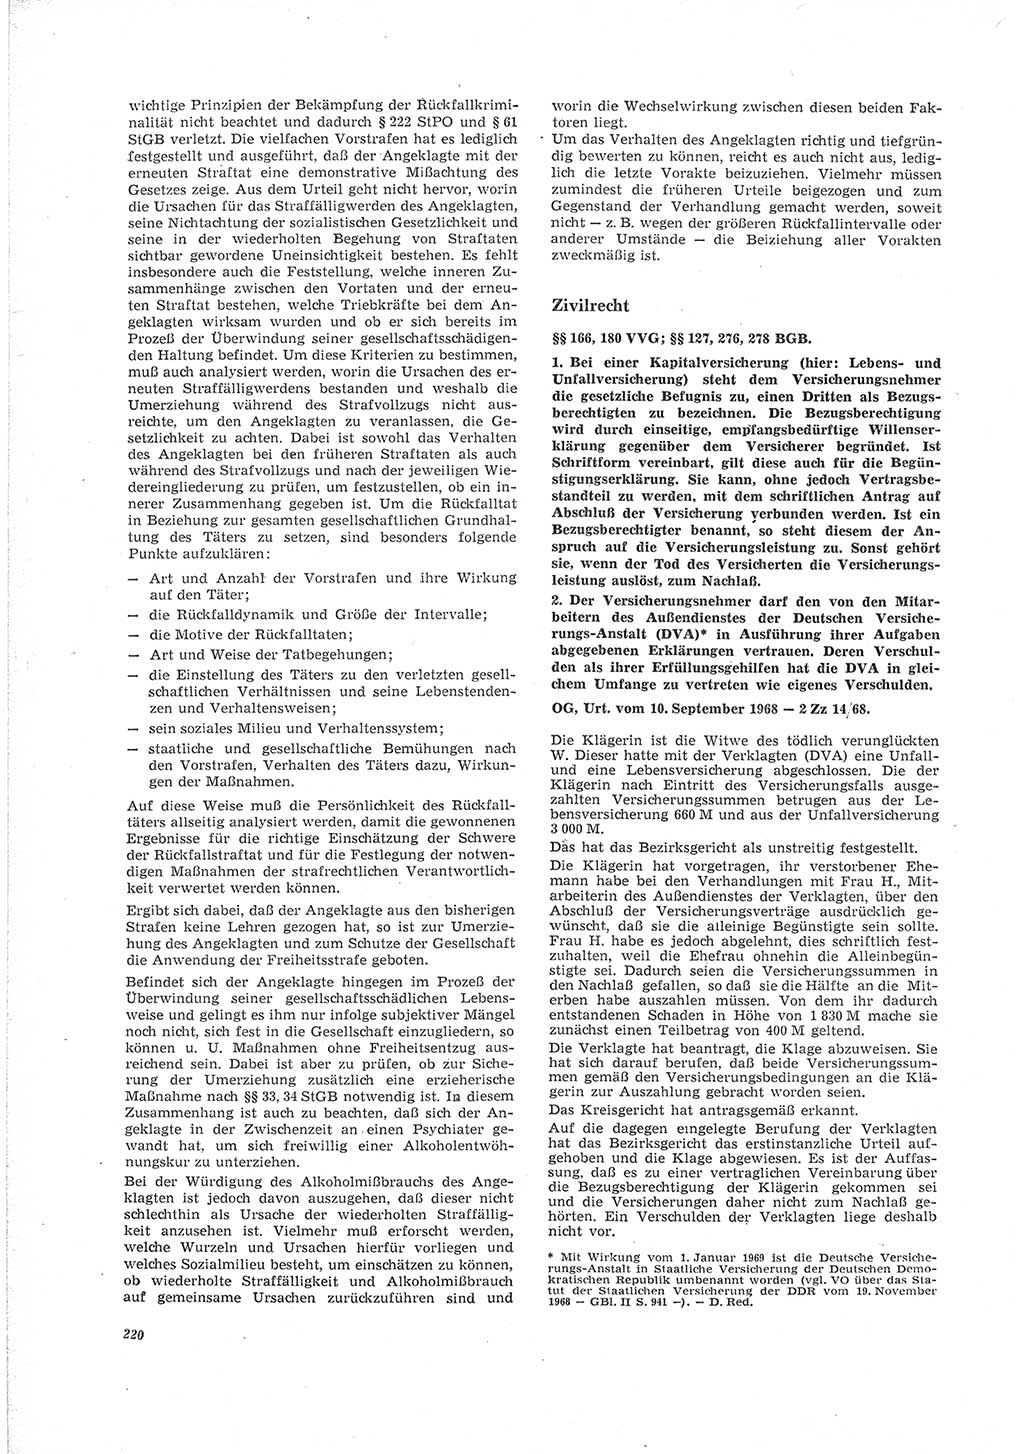 Neue Justiz (NJ), Zeitschrift für Recht und Rechtswissenschaft [Deutsche Demokratische Republik (DDR)], 23. Jahrgang 1969, Seite 220 (NJ DDR 1969, S. 220)